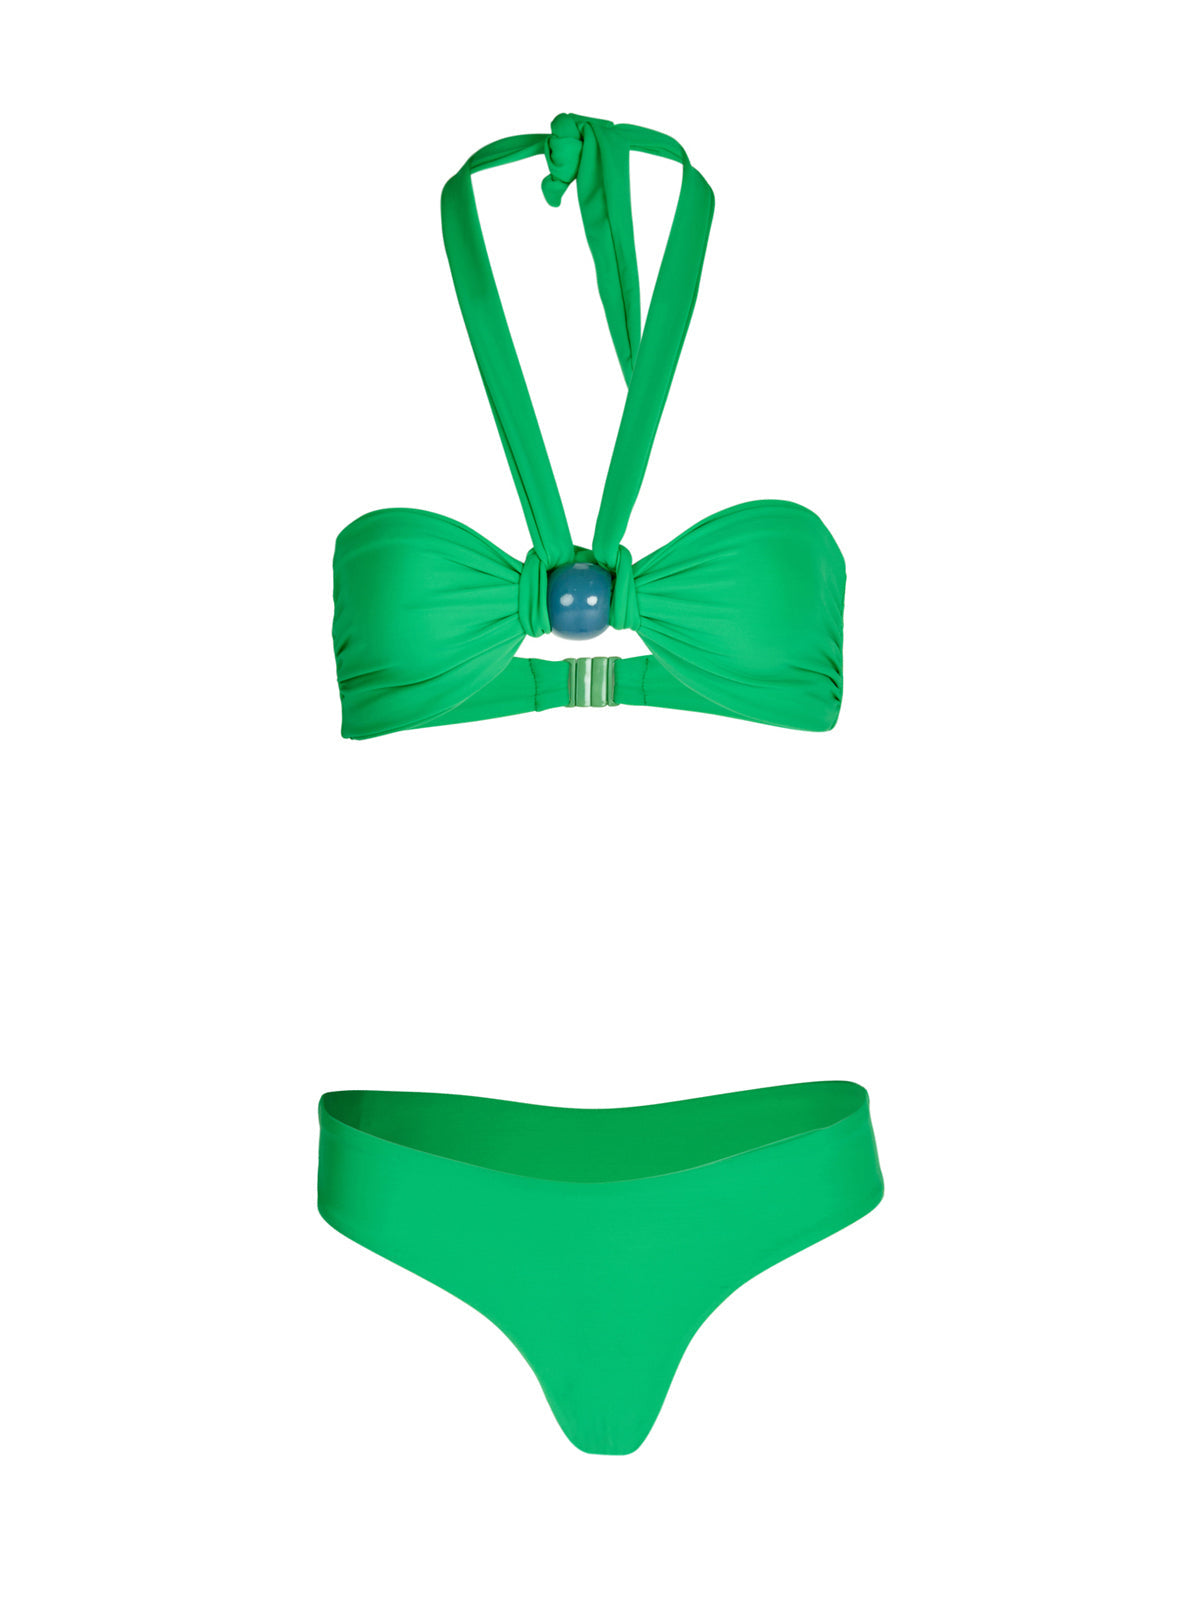 Valderice Bikini Top + Fermina Bikini Bottom Green